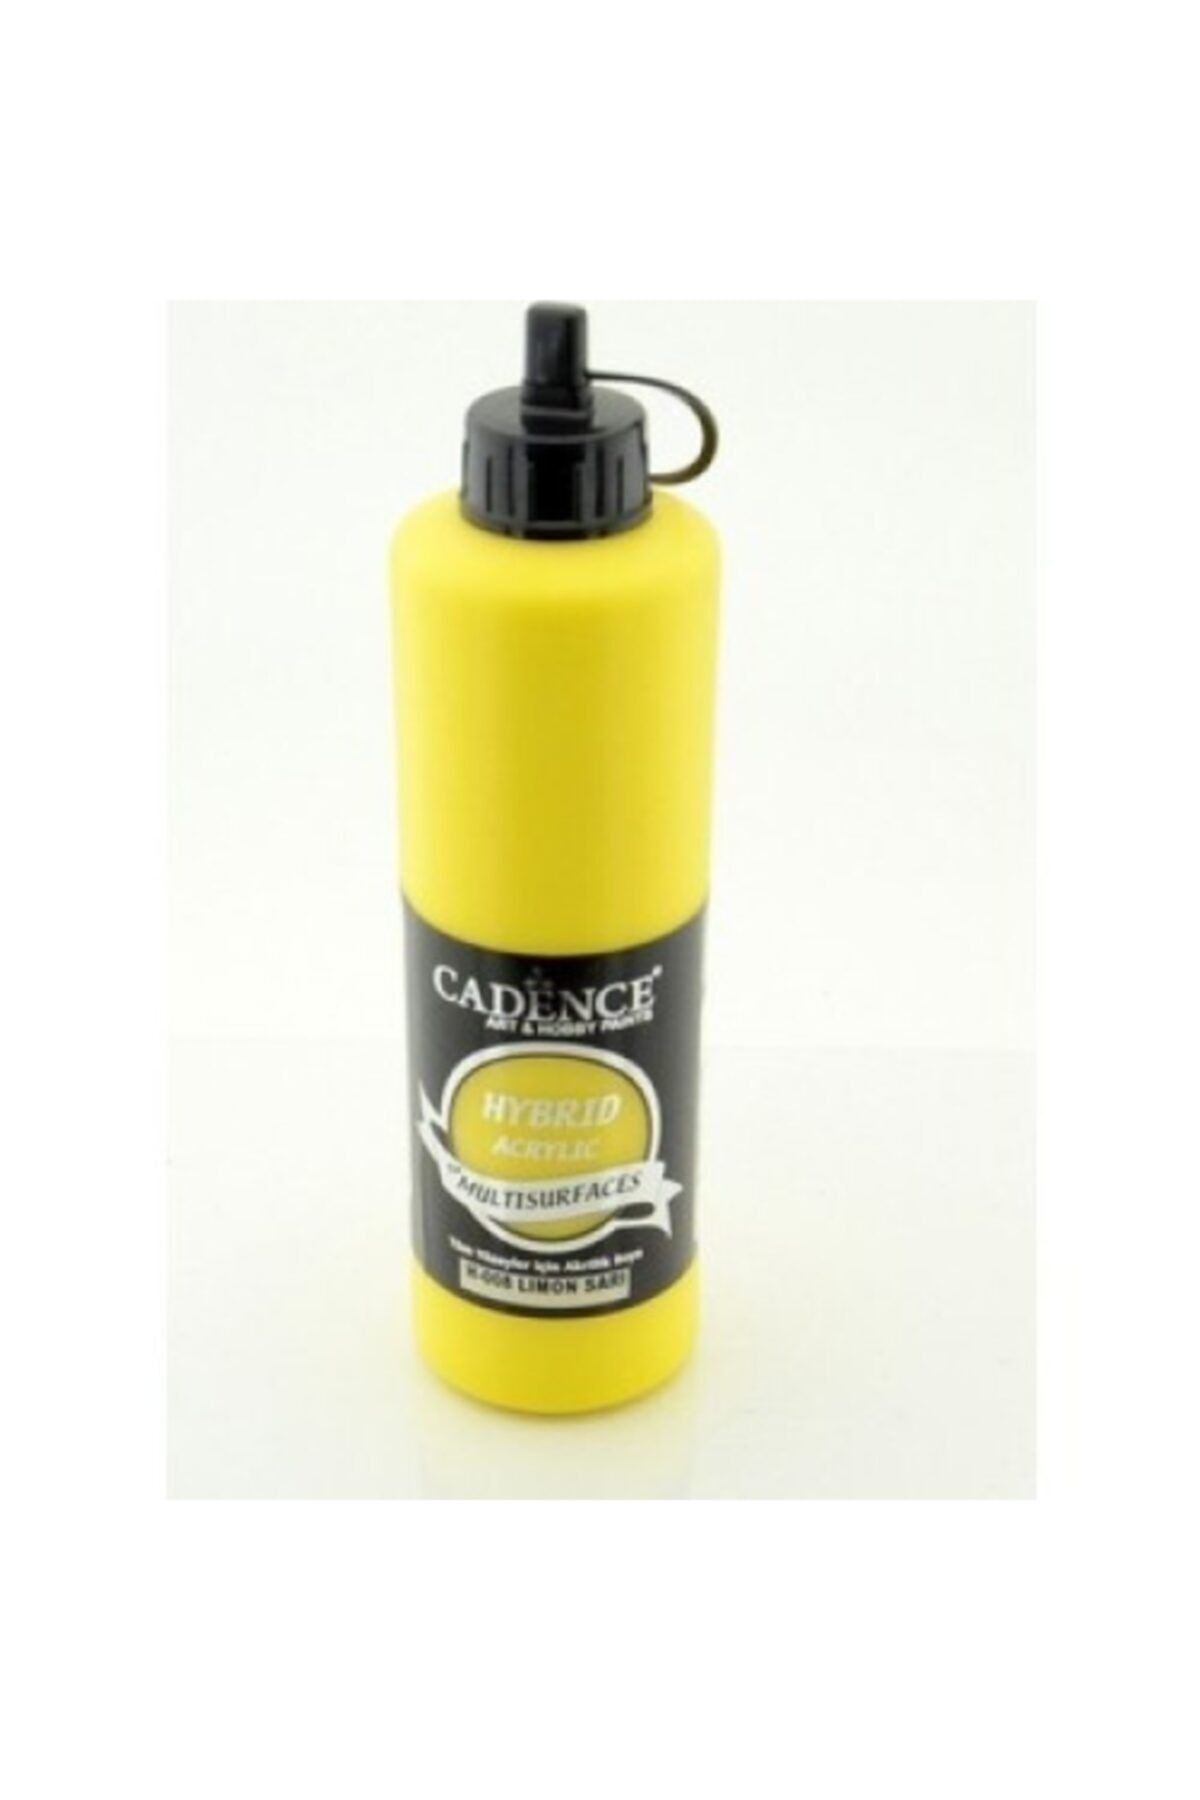 Cadence H-008 Limon Sarı Hybrid Multisurfaces Akrilik Boya 500 ml